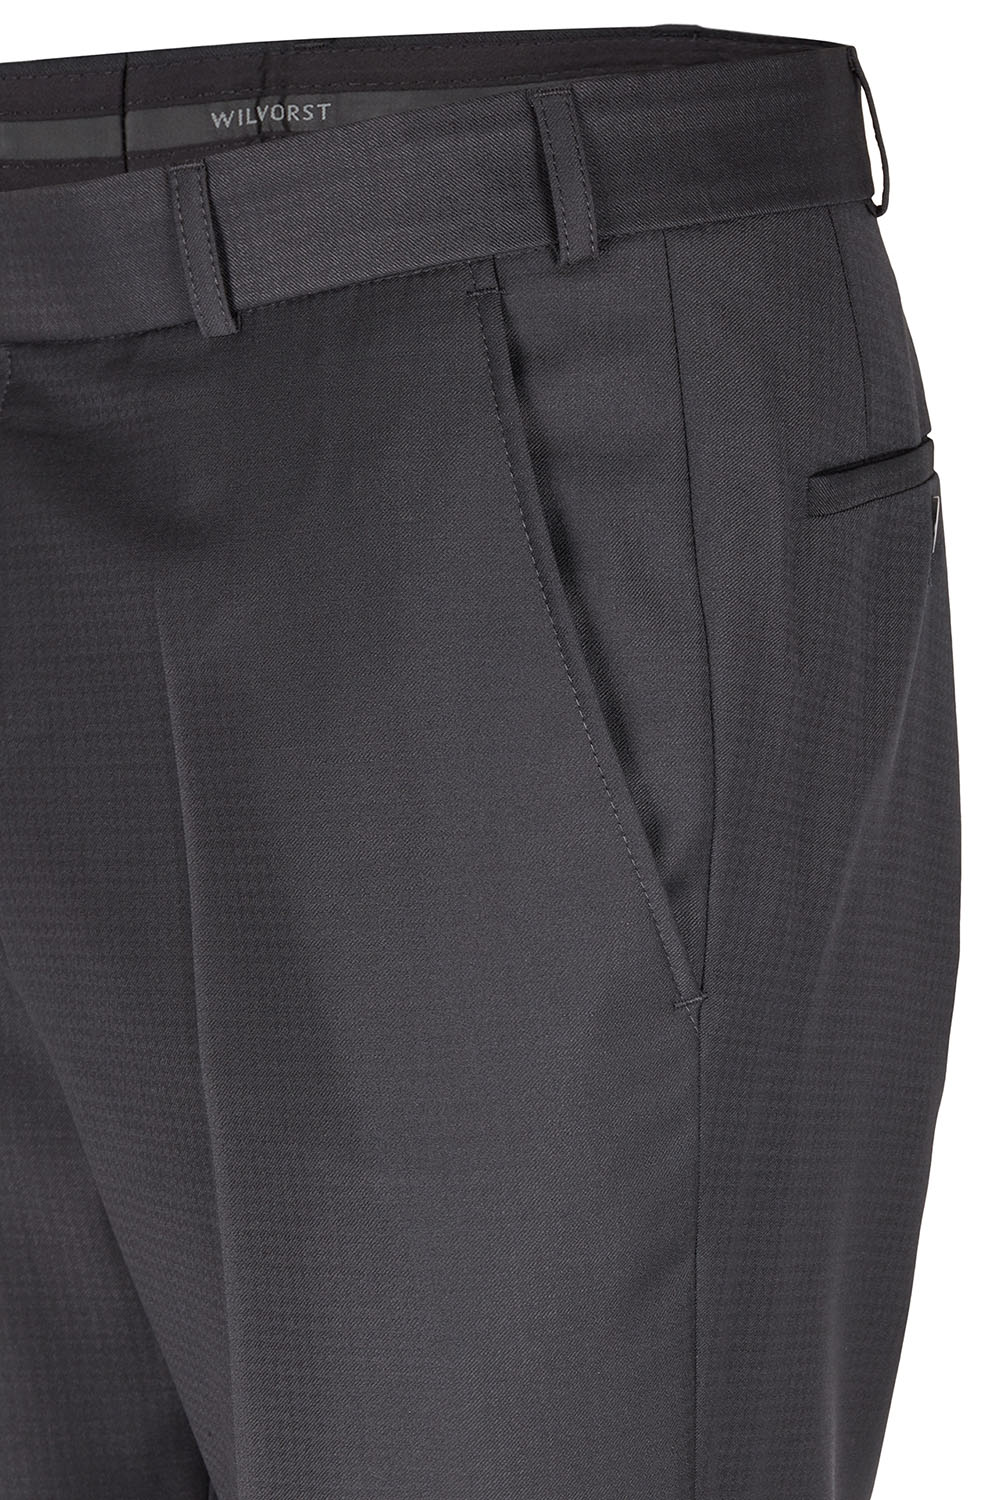 WILVORST fekete szmoking nadrág részletek 461206-10 Modell 724